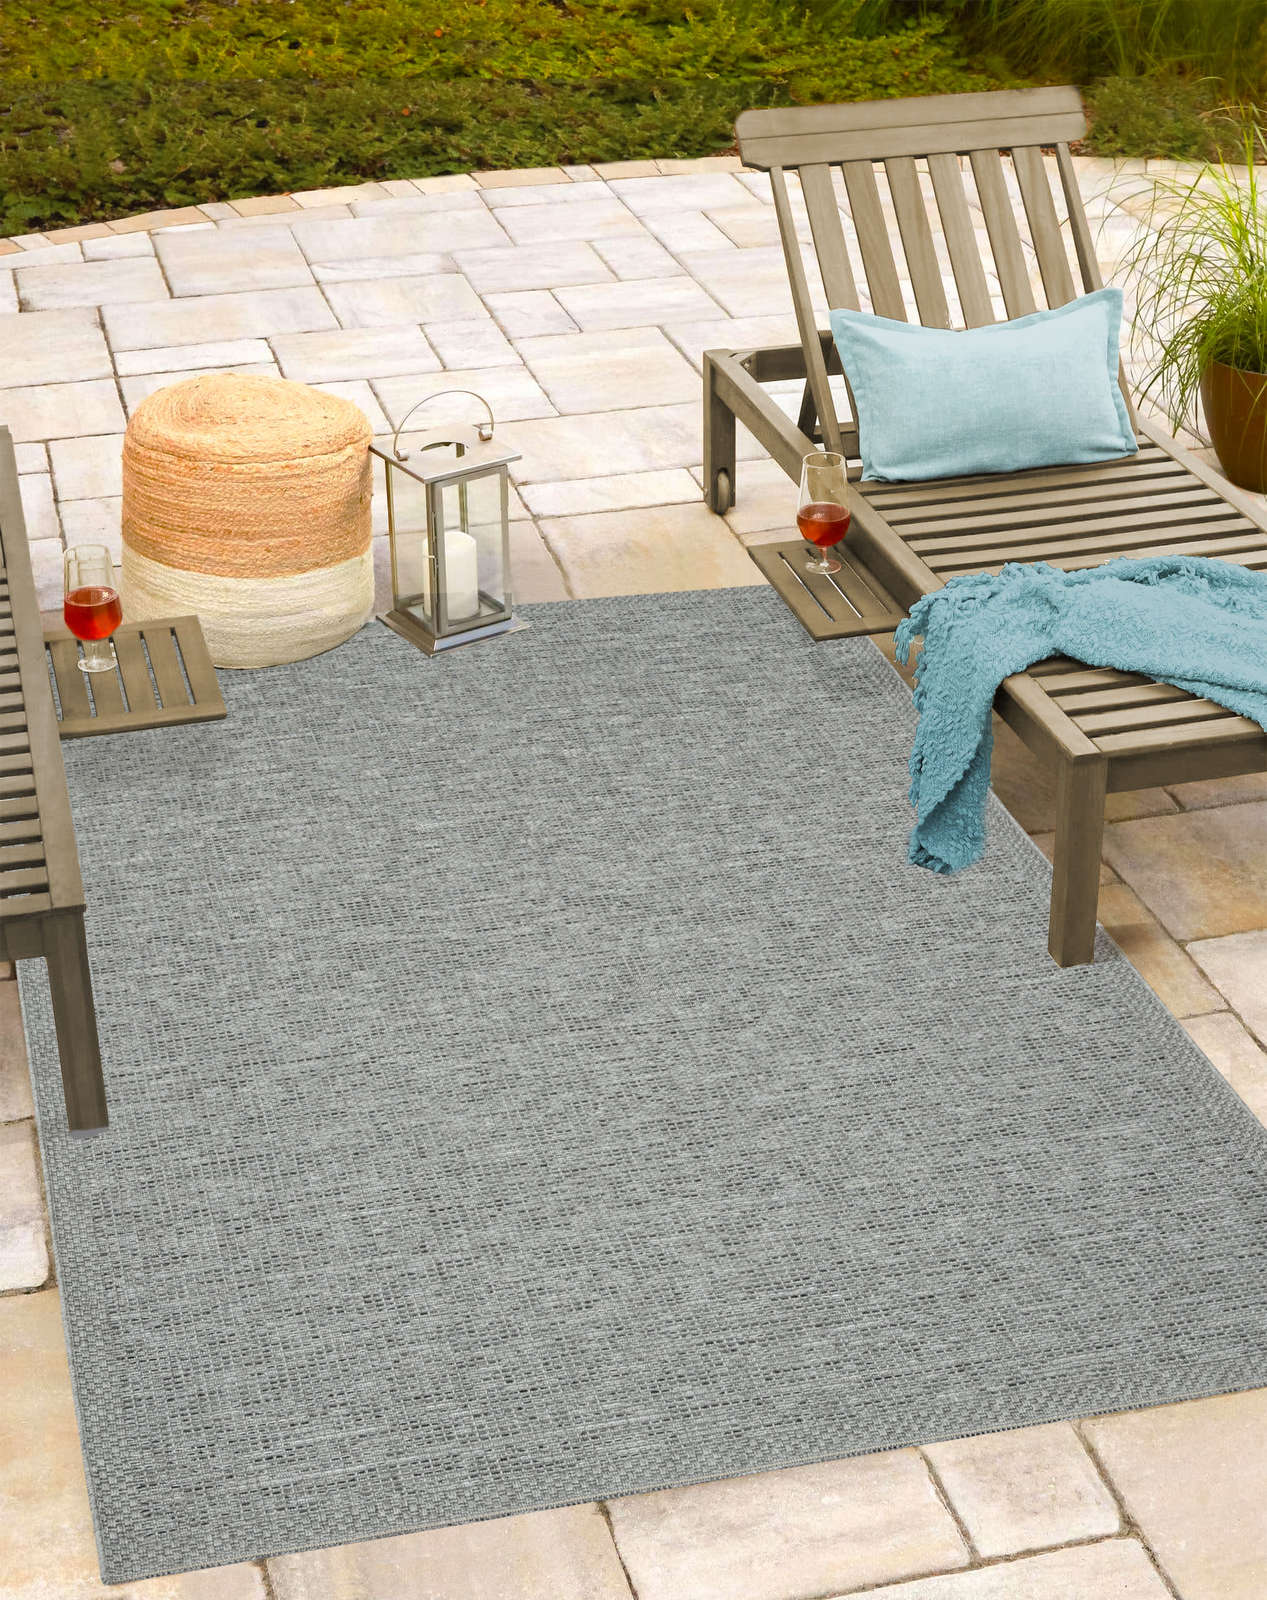             Schlichter Teppich in Grau – 280 x 200 cm
        